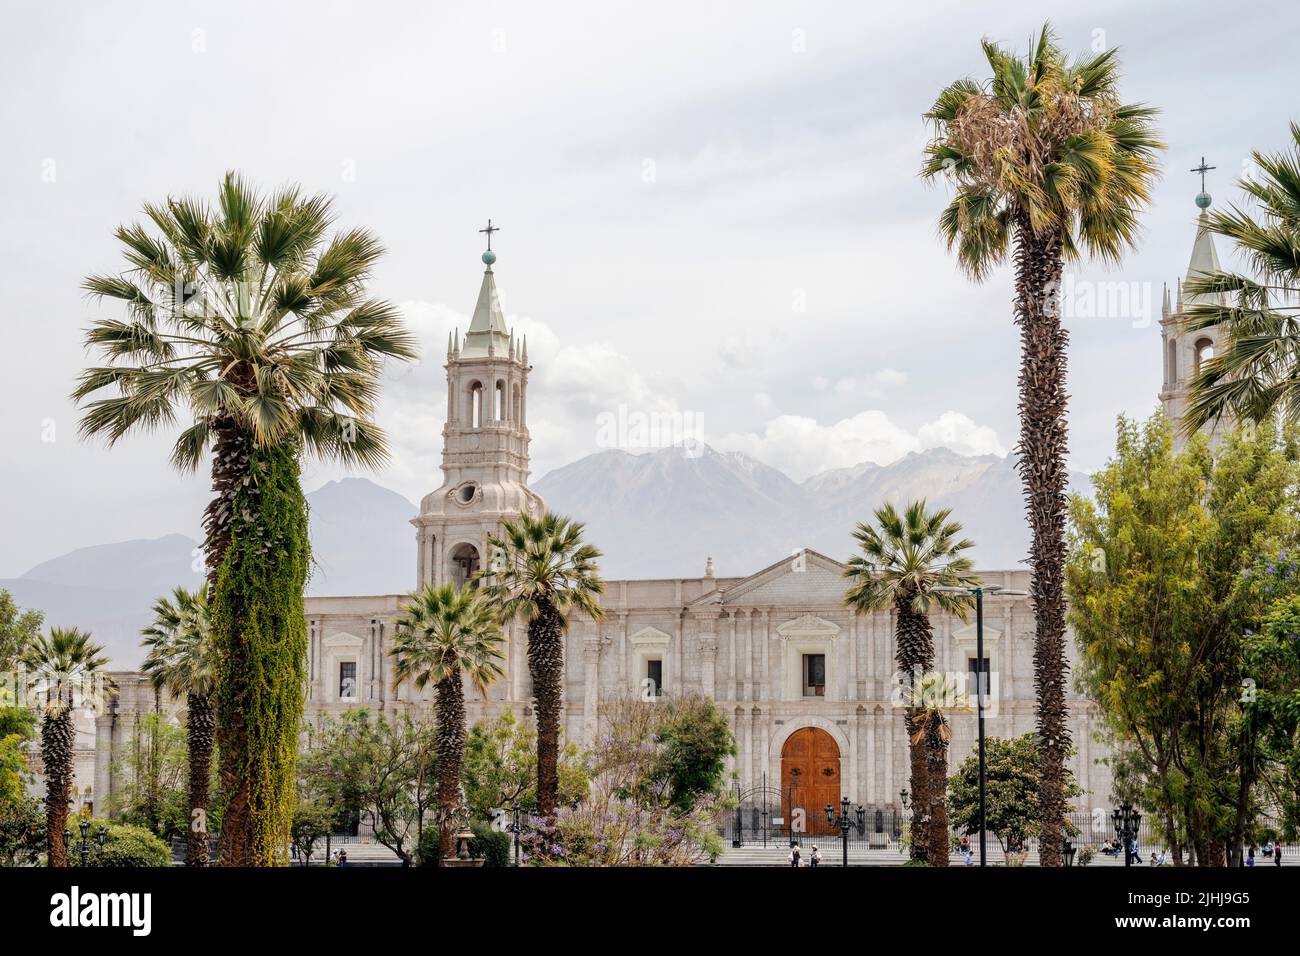 palmeras e iglesia de piedra blanca en la famosa Plaza de Armas en la ciudad de Arequipa, Perú Foto de stock